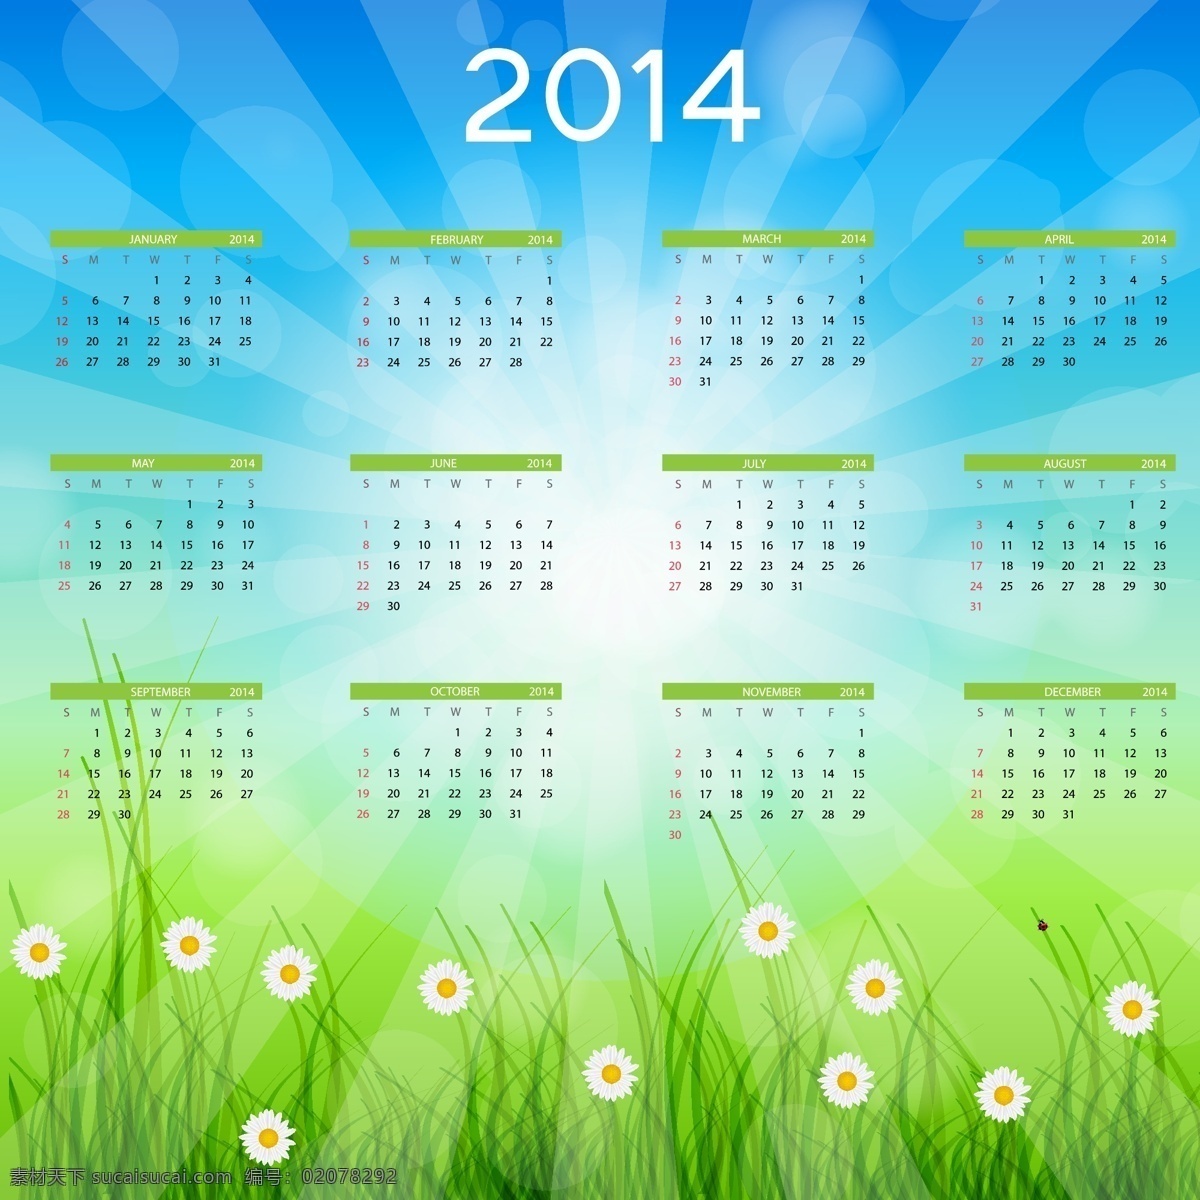 绿色 草地 背景 日历 花朵 2014年 台历 日历模板 模板设计 日历台历 矢量素材